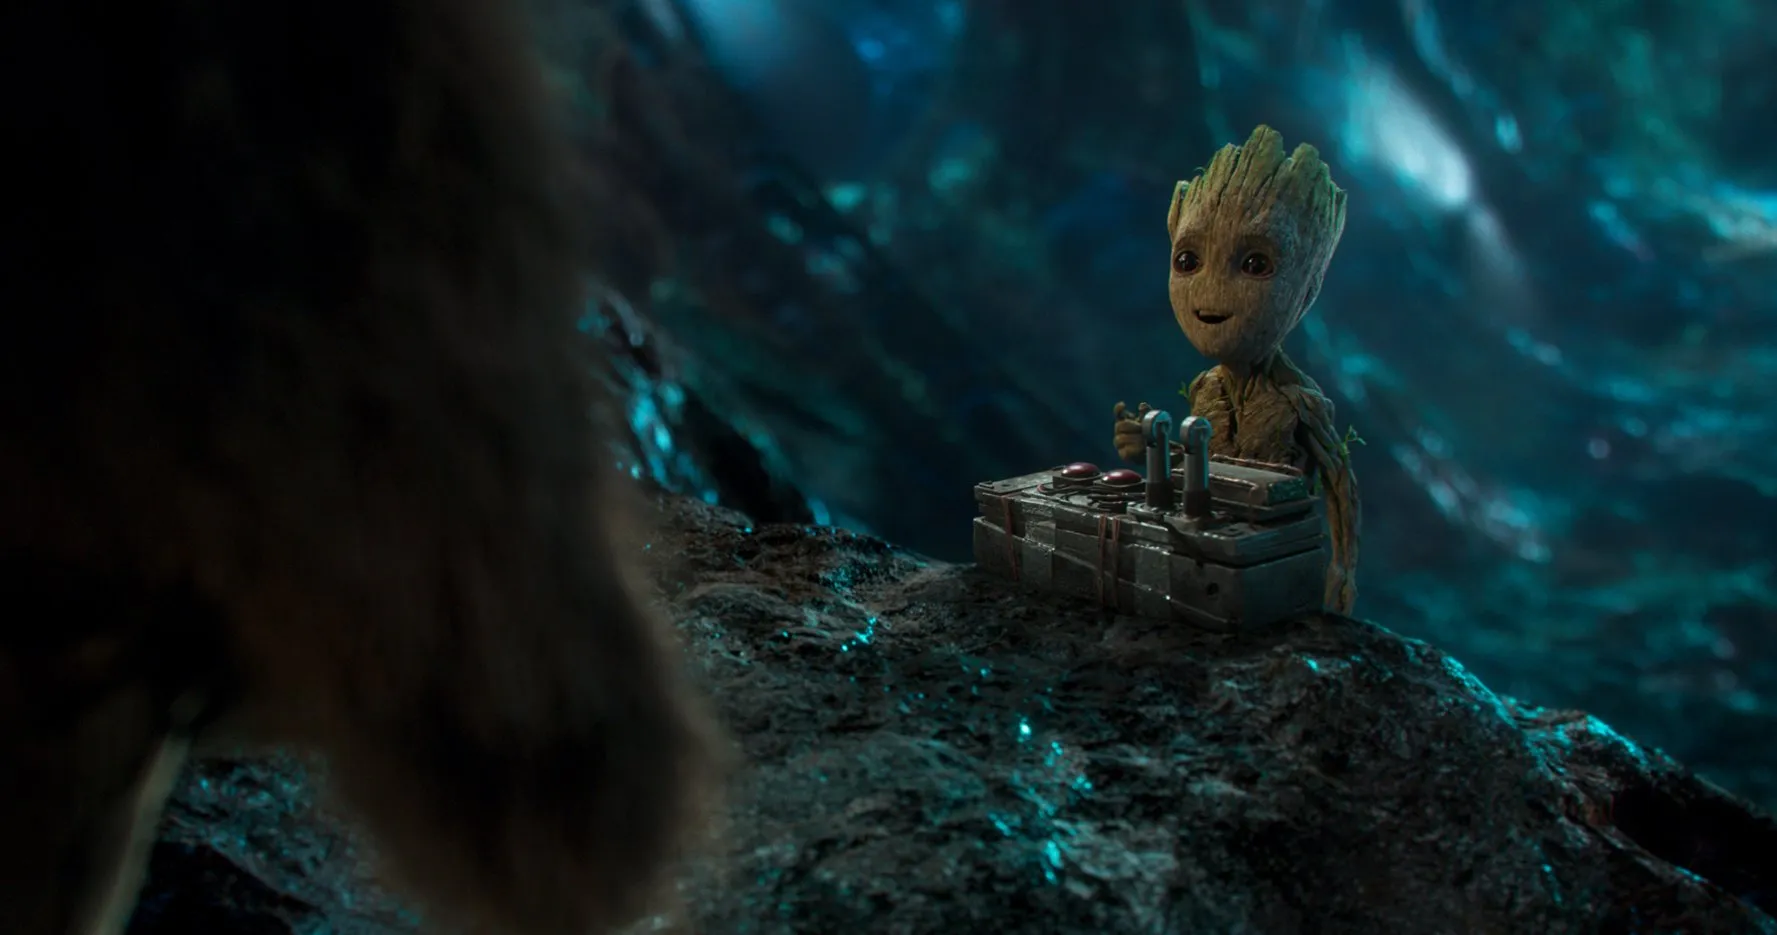 Review phim Guardians of the Galaxy Vol. 2 (Vệ Binh Dải Ngân Hà 2) bản IMAX 3D